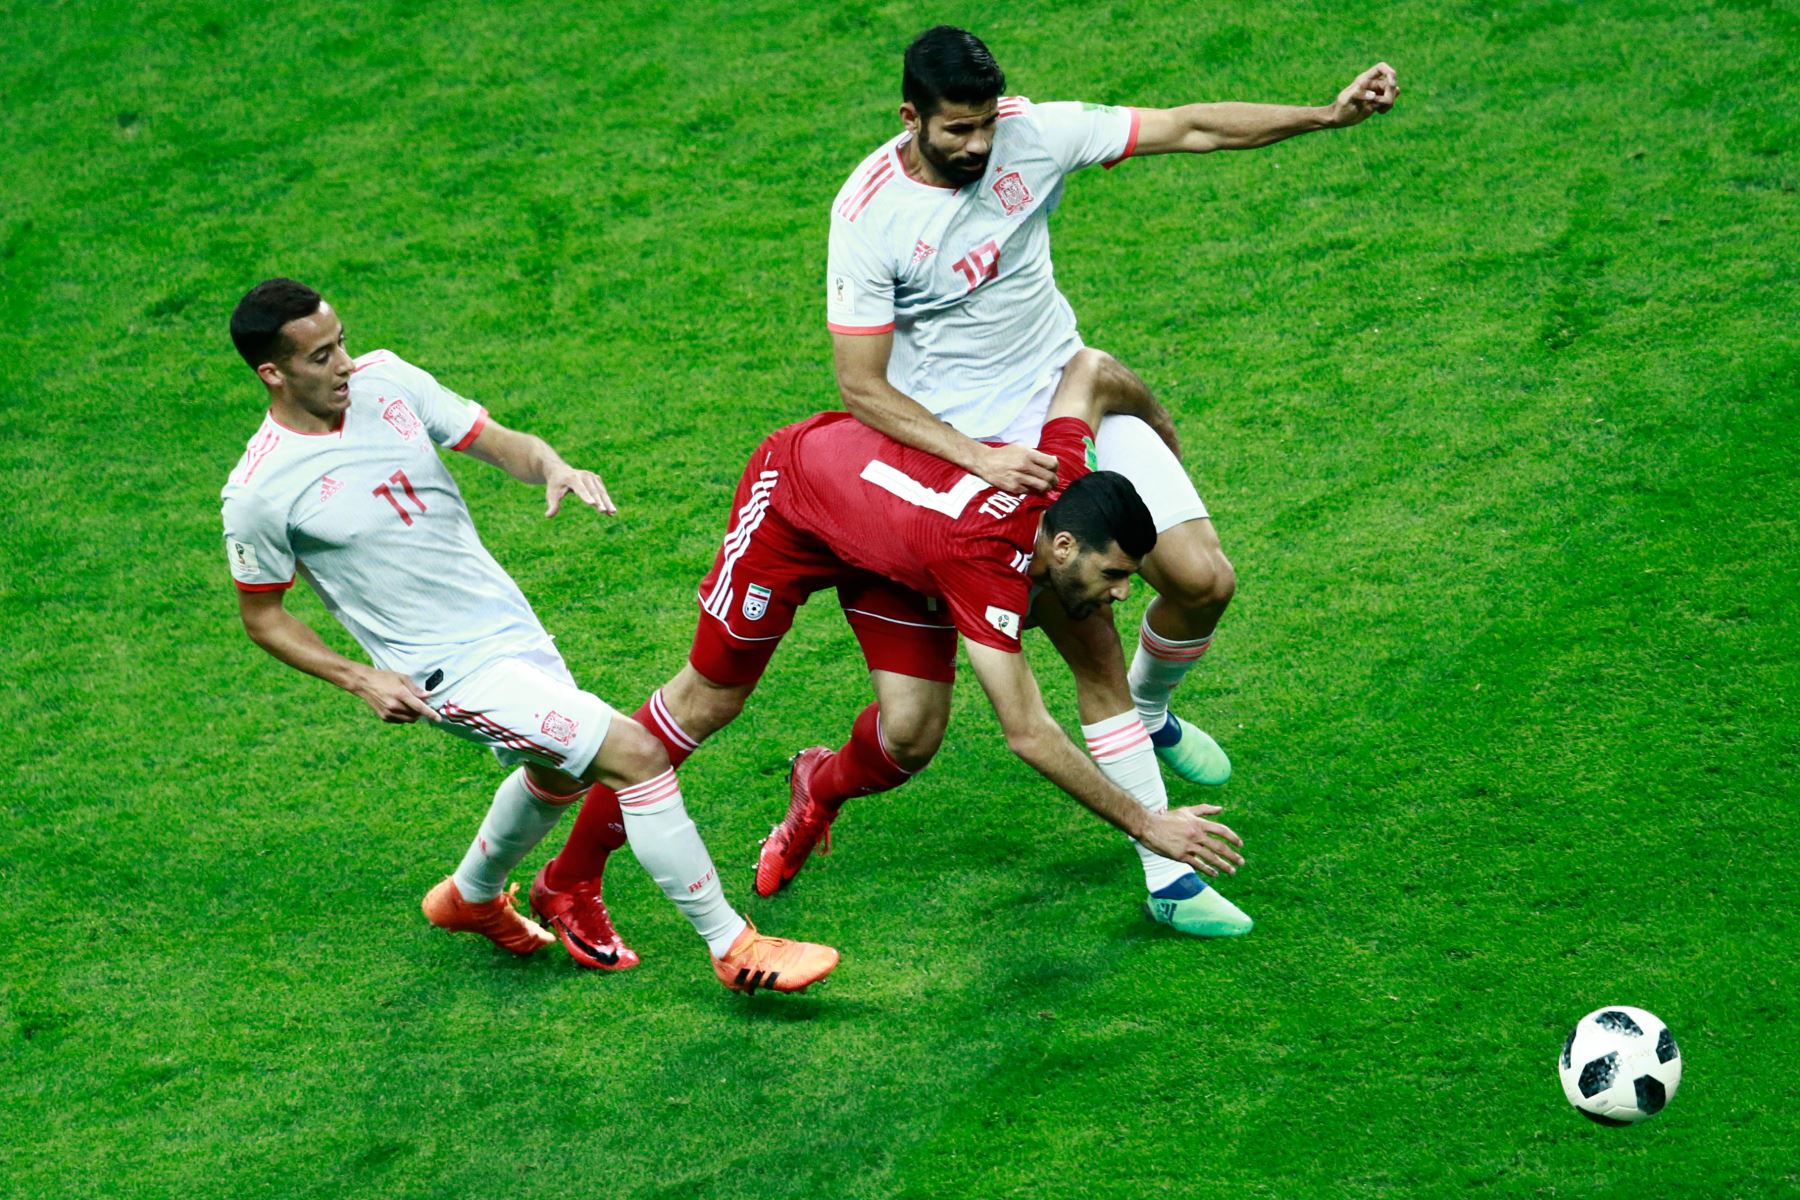 El delantero iraní Mehdi Taremi (C) recibe una falta del alero español Diego Costa (R) durante el partido de fútbol del Grupo B de la Copa Mundial Rusia 2018 entre Irán y España en el Kazan Arena en Kazán el 20 de junio de 2018. / AFP